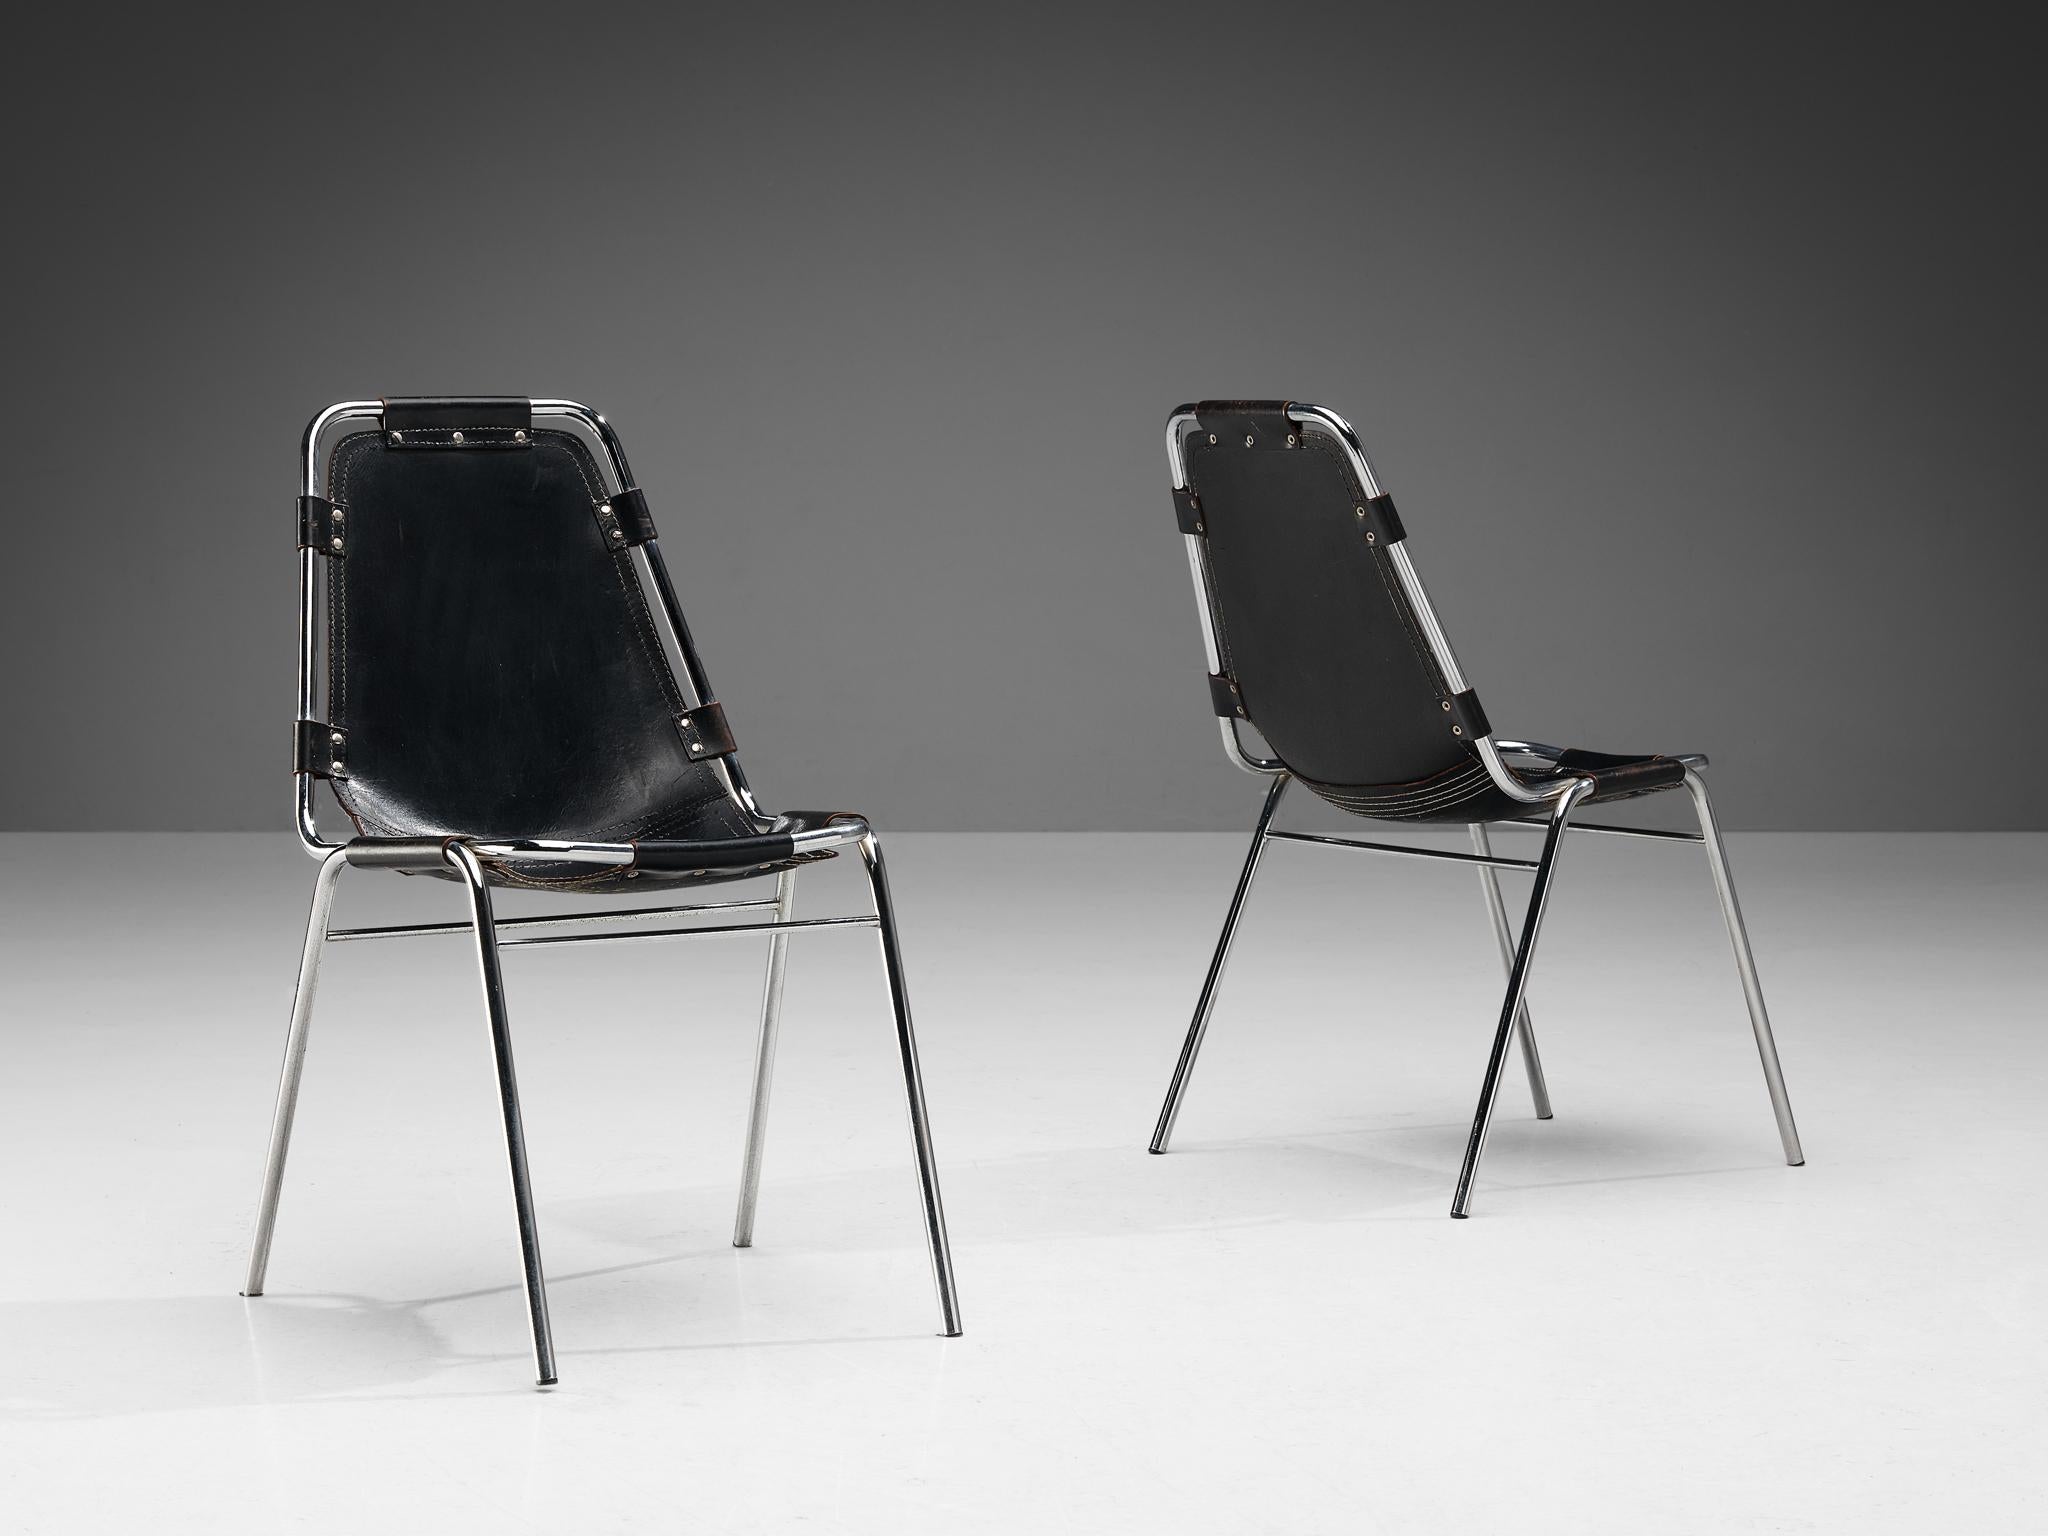 CIRCA paire de chaises 'Les Arcs', sélectionnées par Charlotte Perriand, paire de chaises de salle à manger modèle 'Les Arcs', cuir noir, métal chromé, circa 1970. 

Cette paire de chaises bien construites a été fabriquée par Dal Vera et